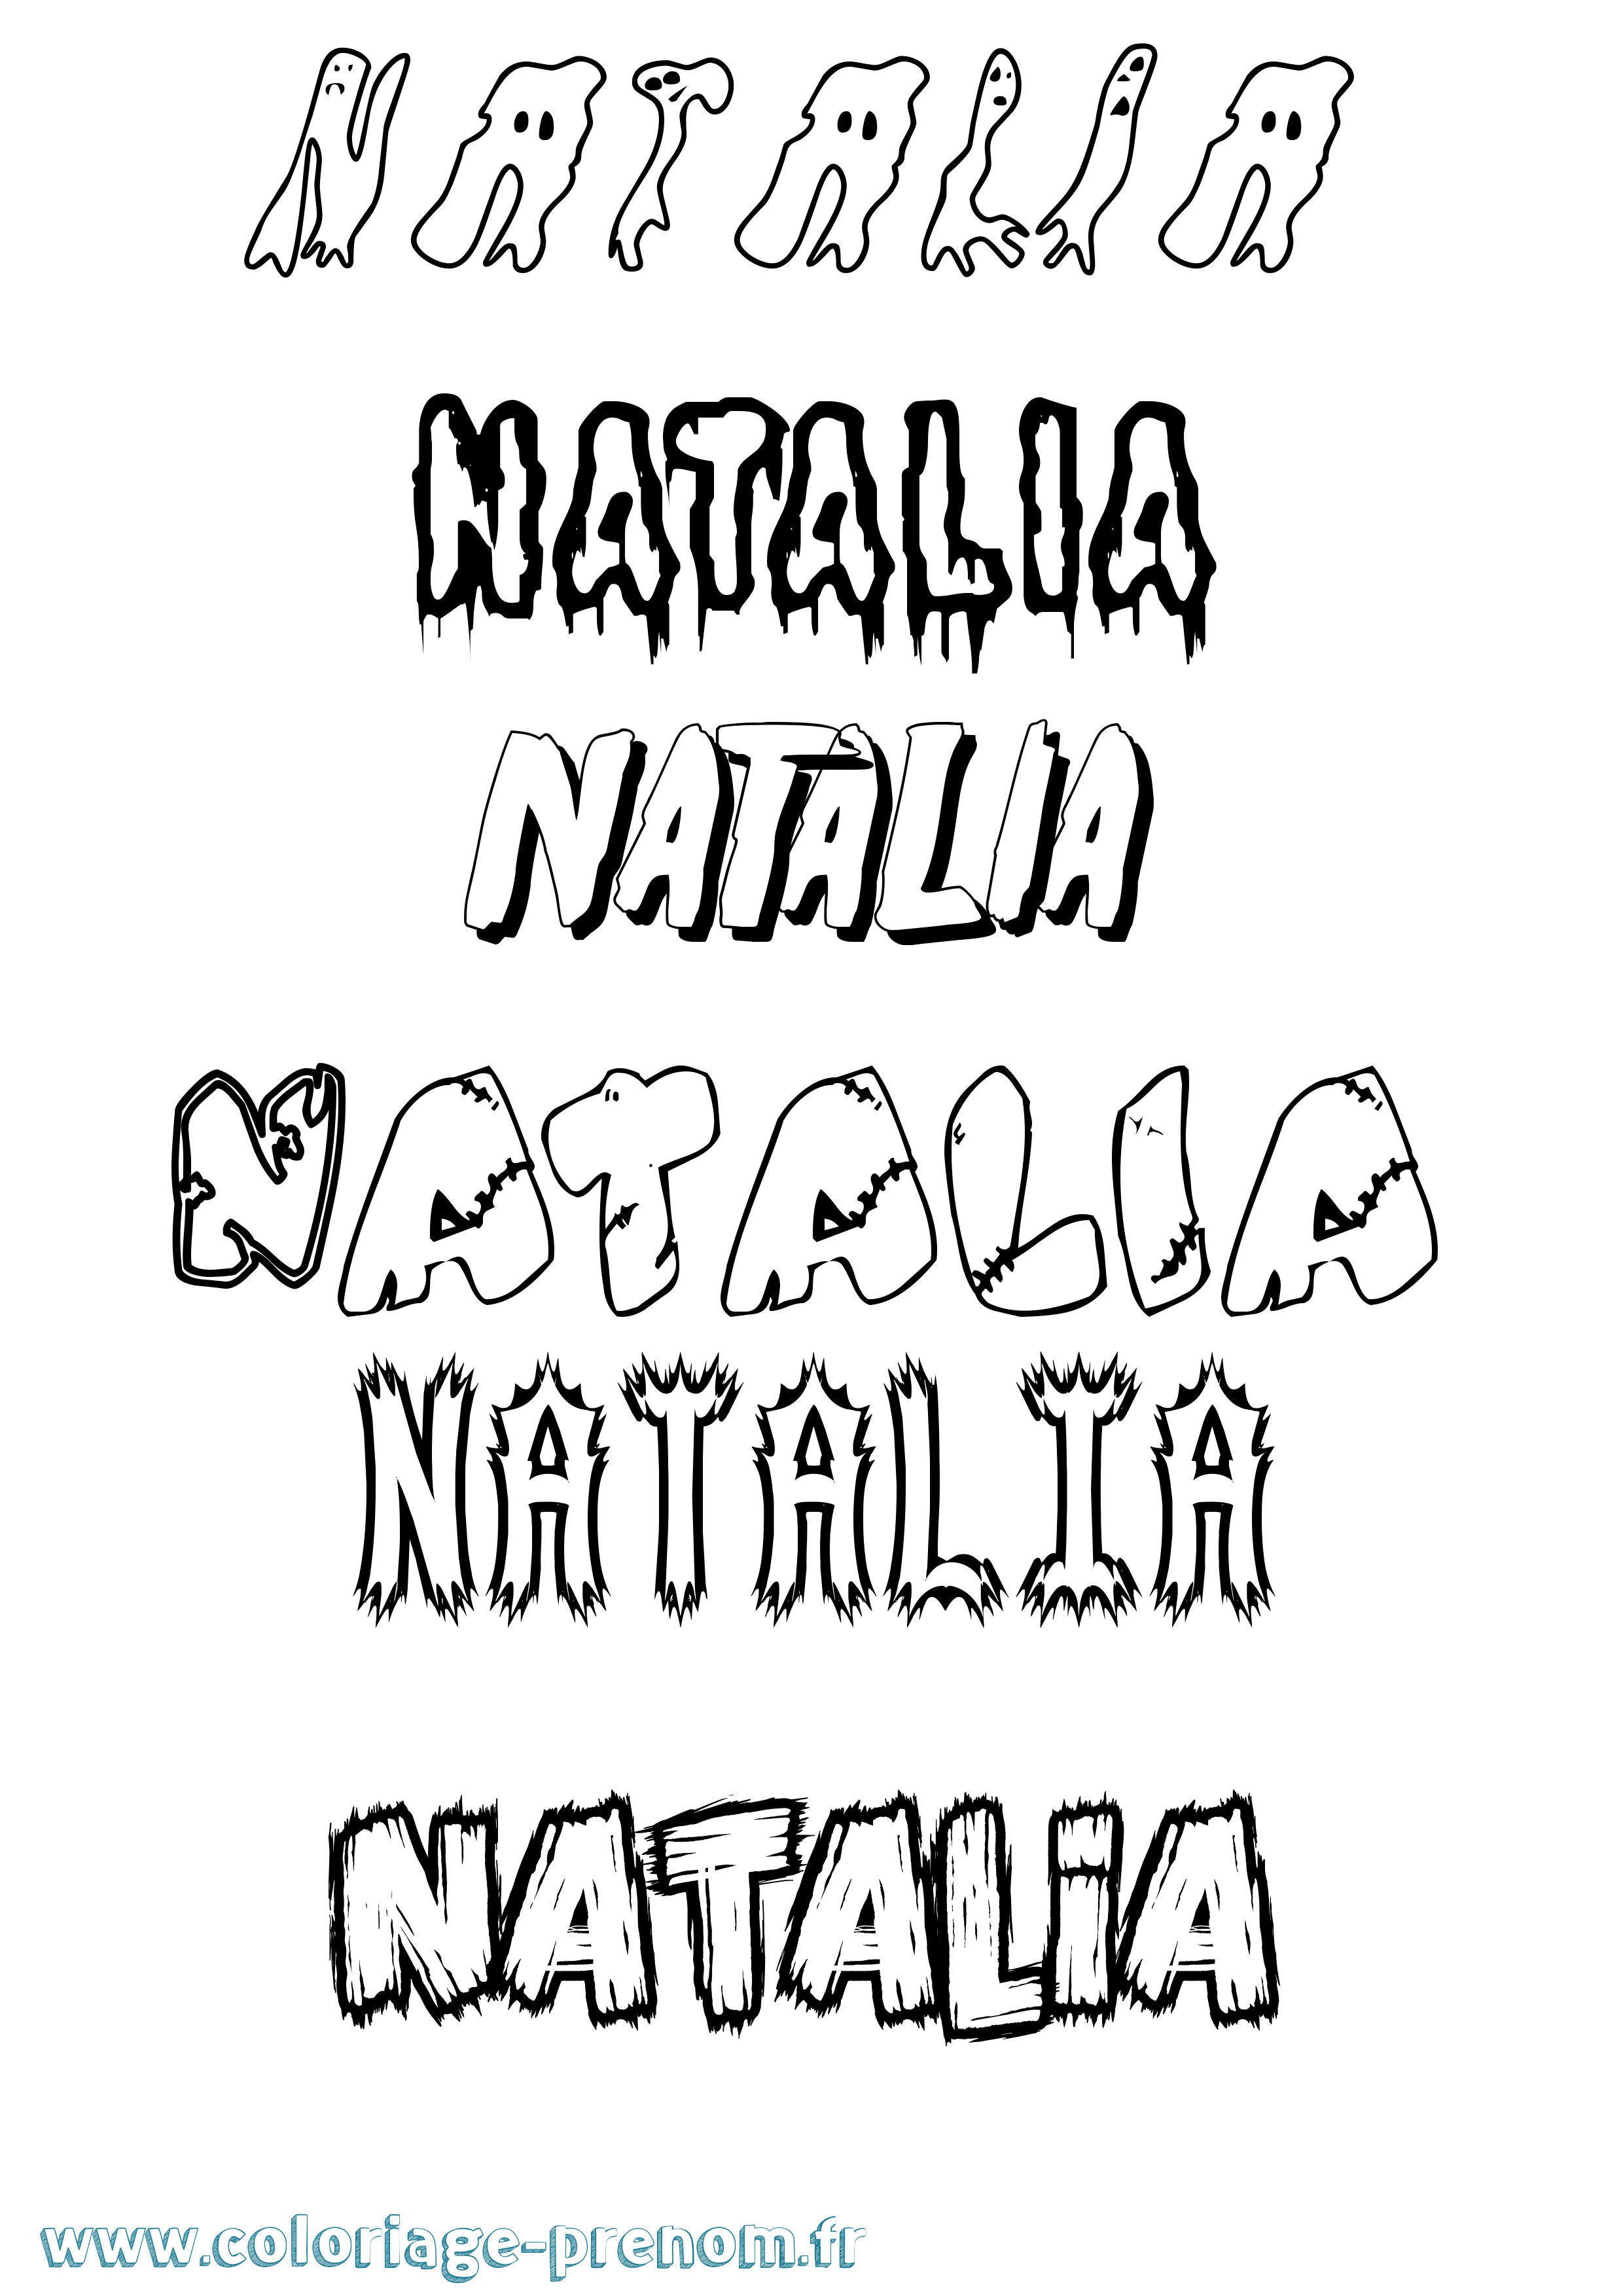 Coloriage prénom Natalia Frisson